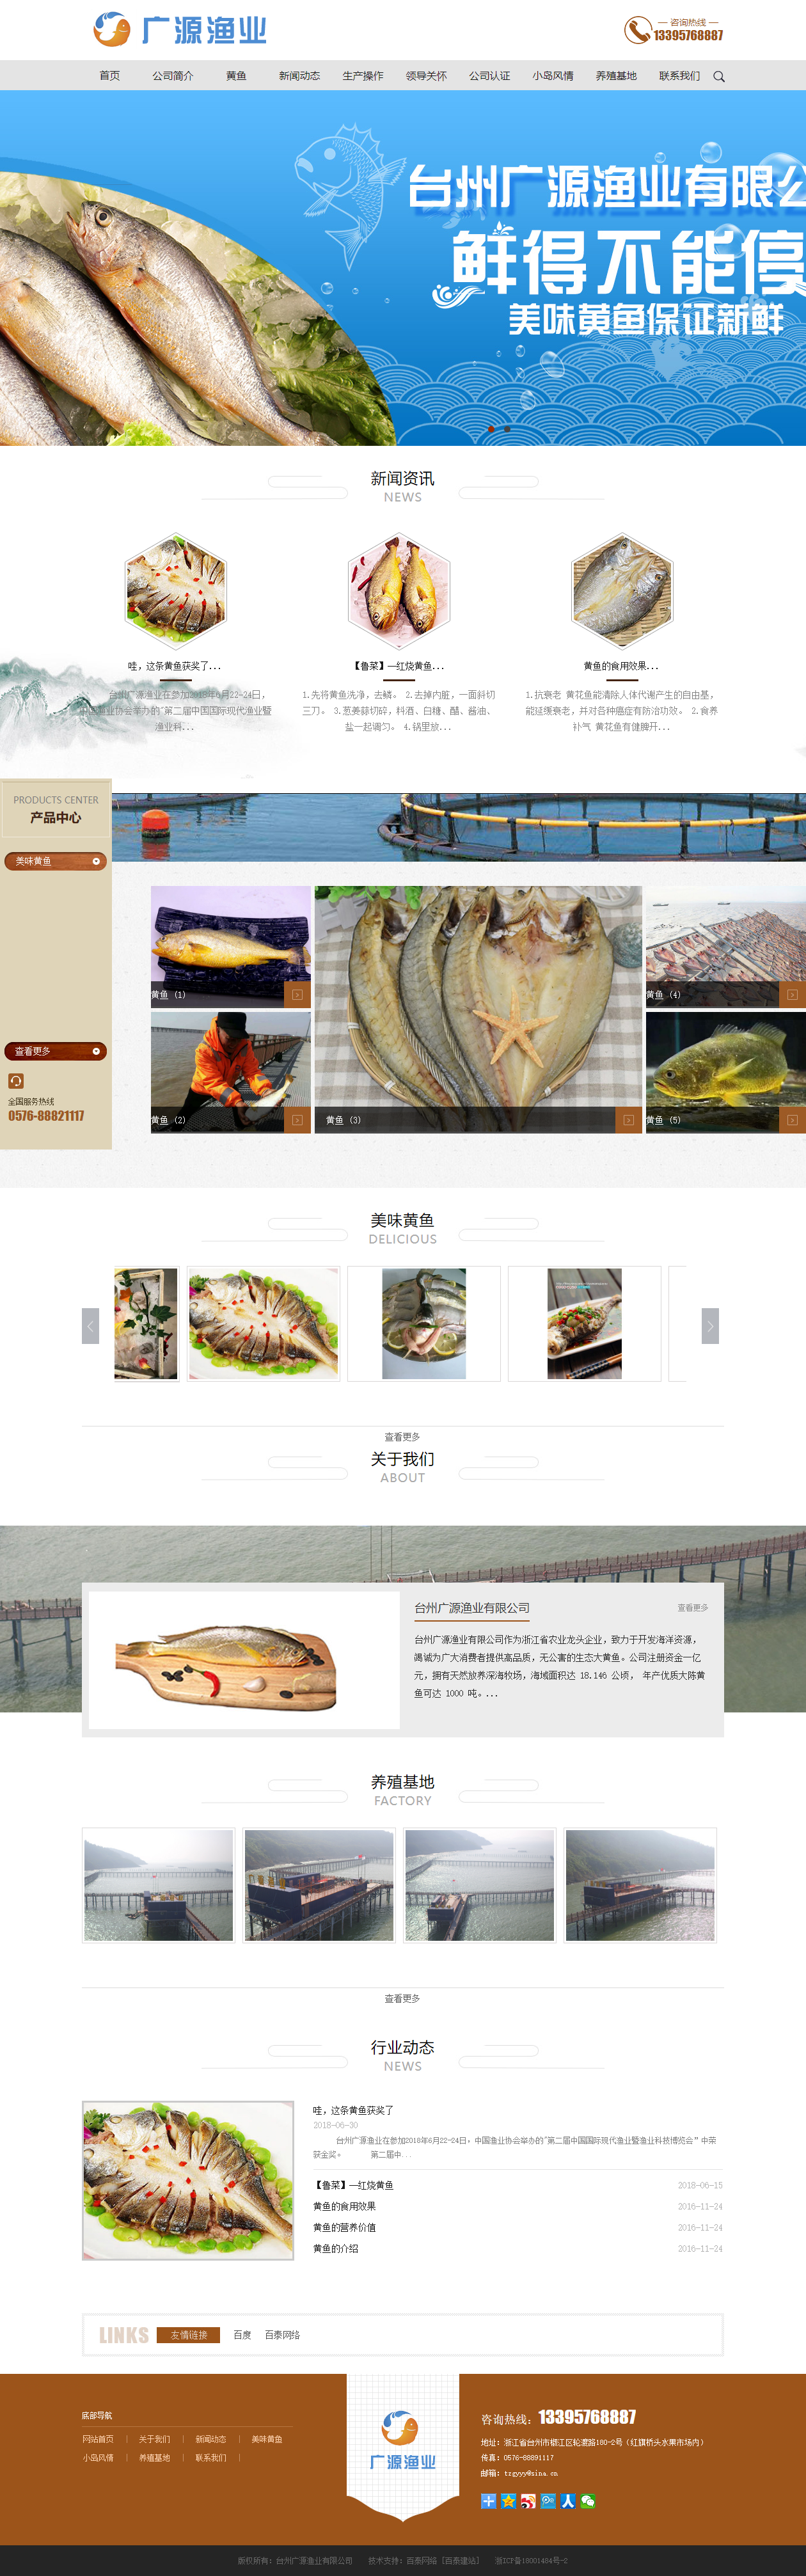 台州广源渔业有限公司网站案例